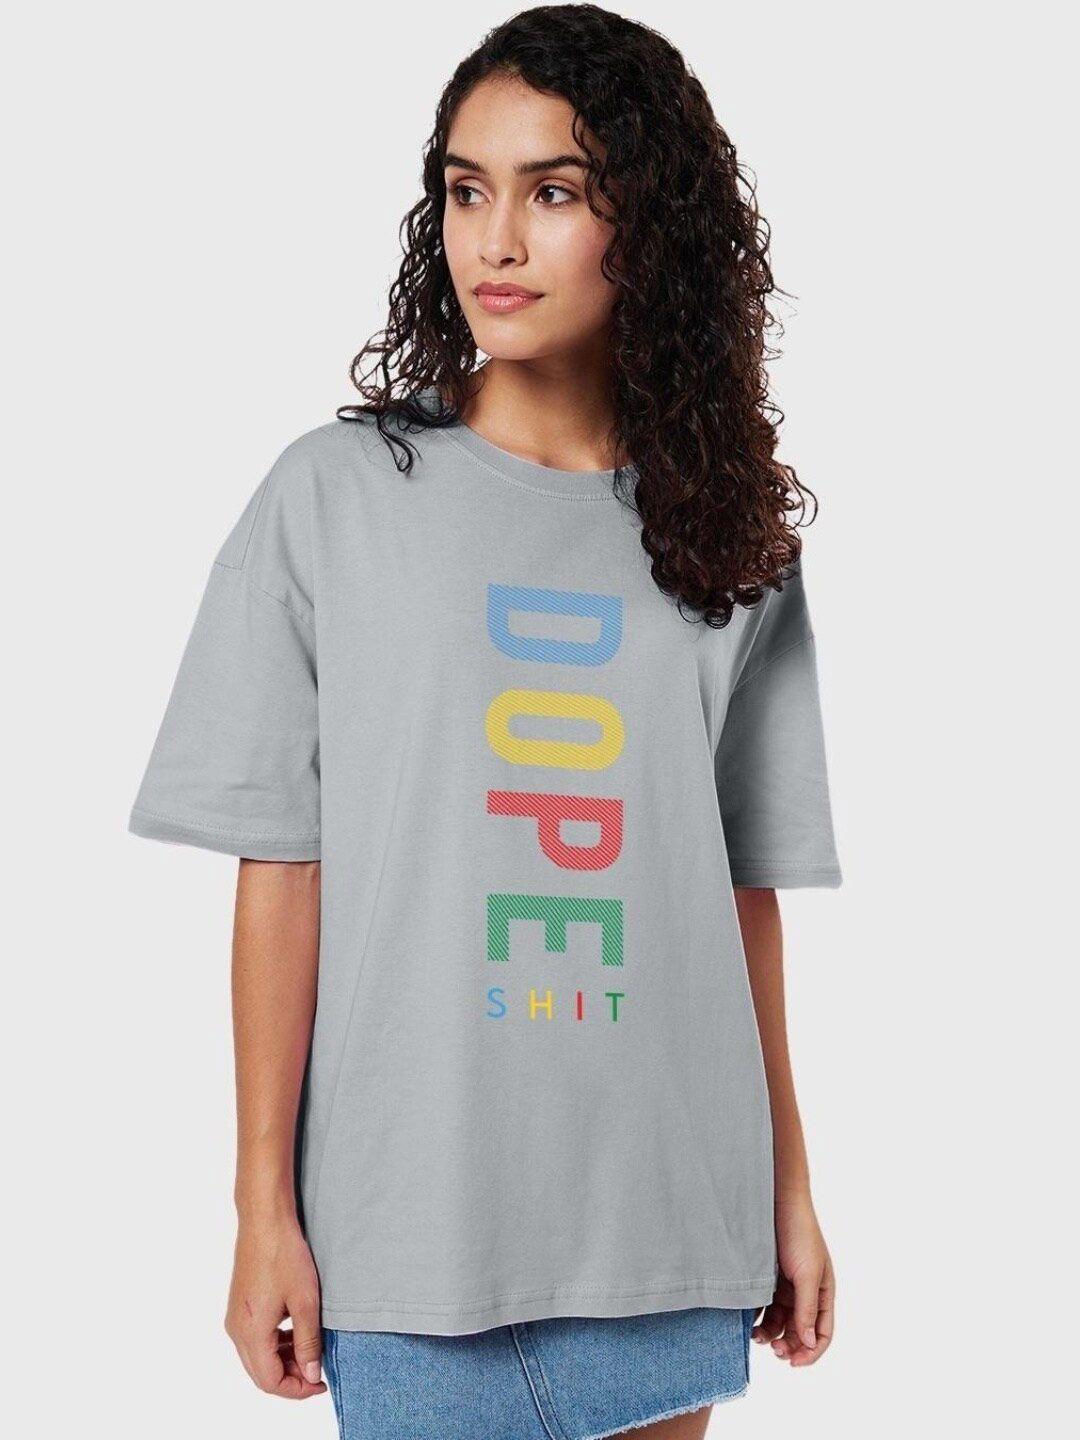 bewakoof women dope shit typography oversized t-shirt